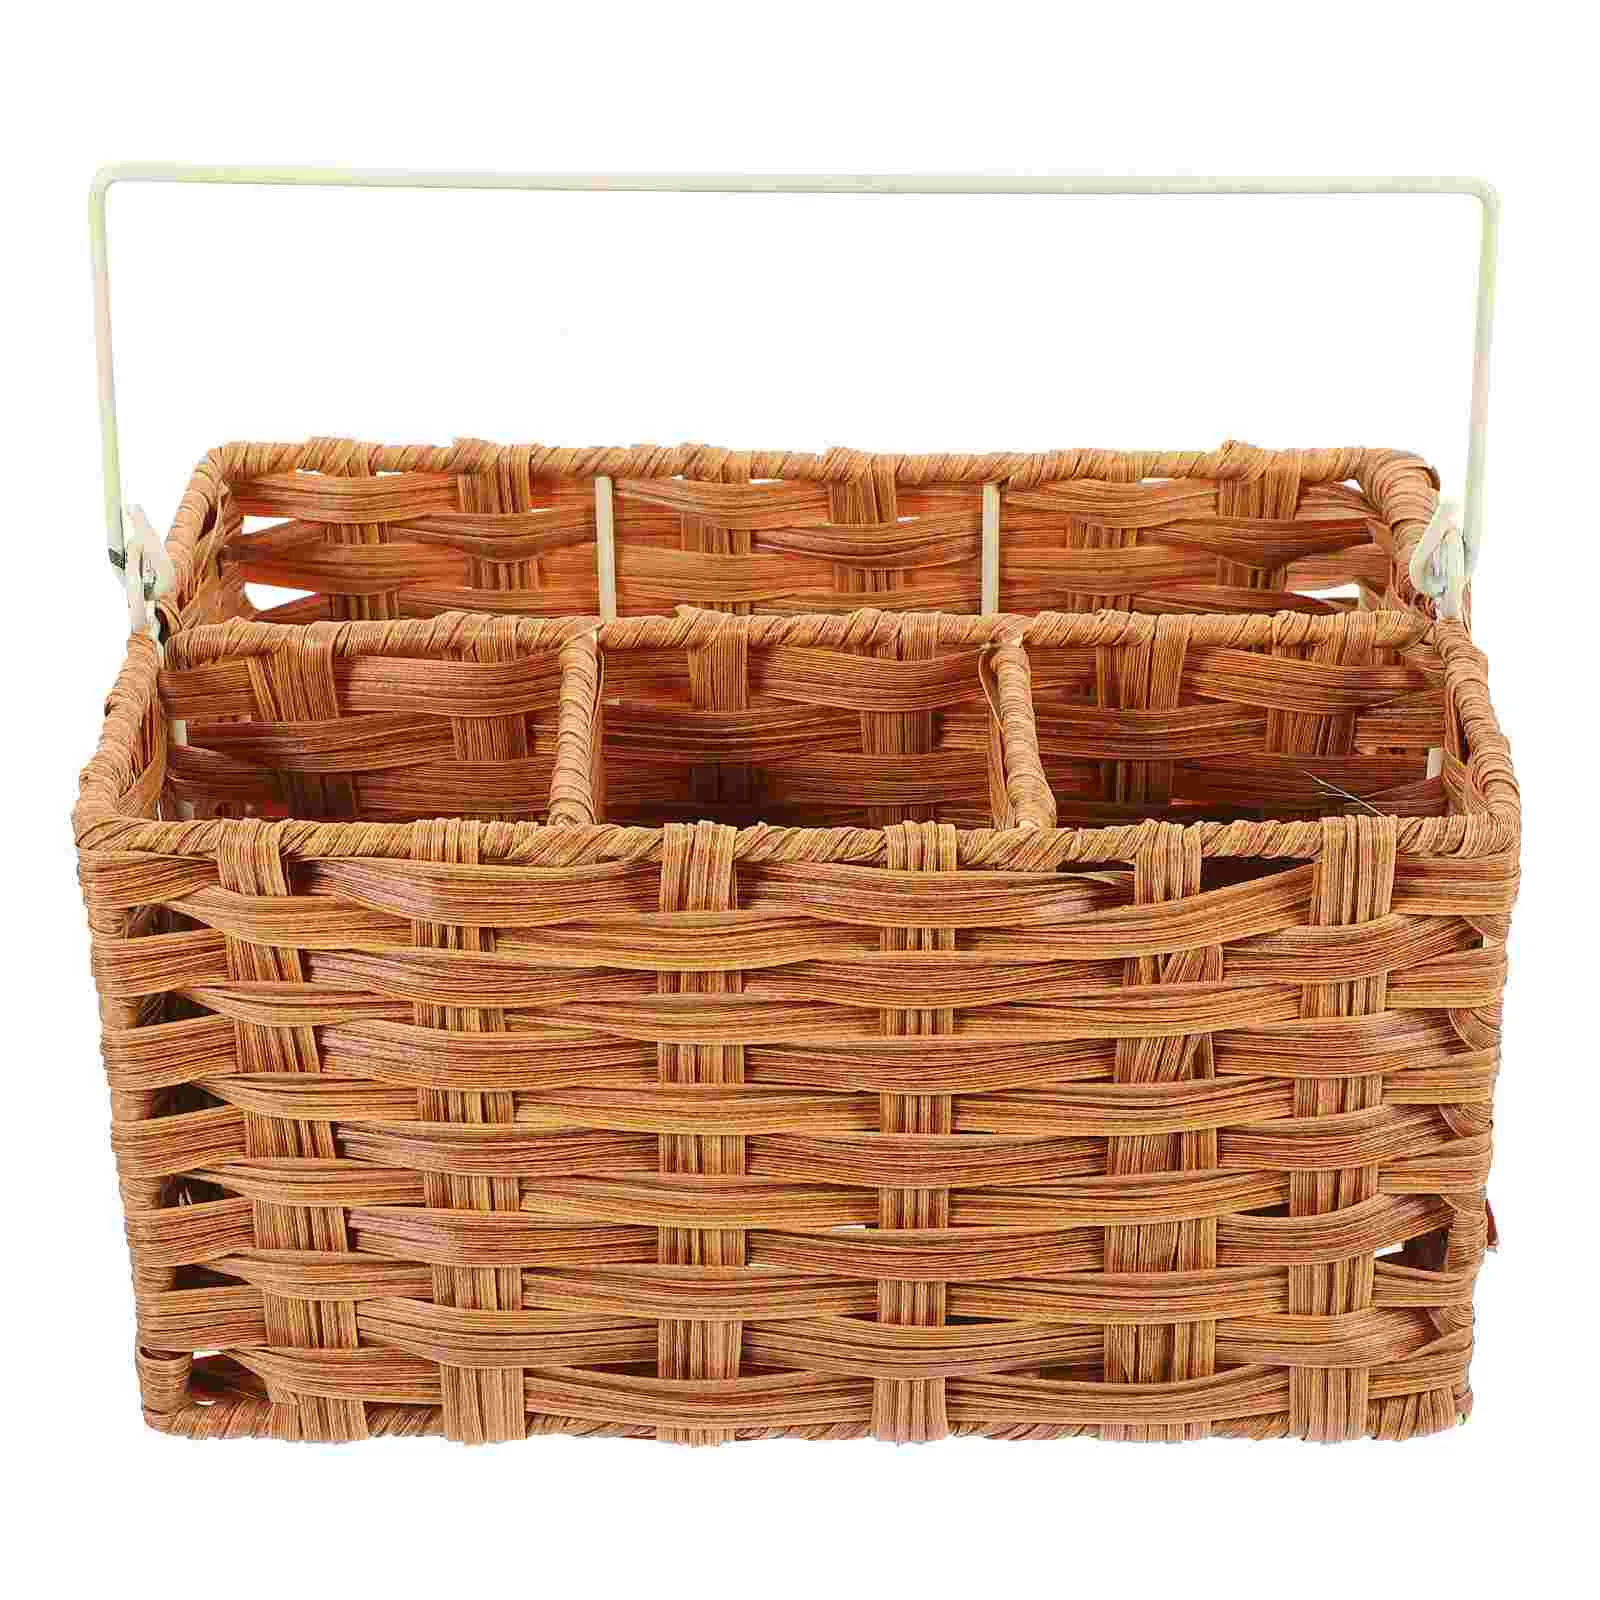 

Storage Baskets Storage Basket White Snack Tray Organizer Flatware Drawers Home Utensil Holder Kitchen Utensils Countertop